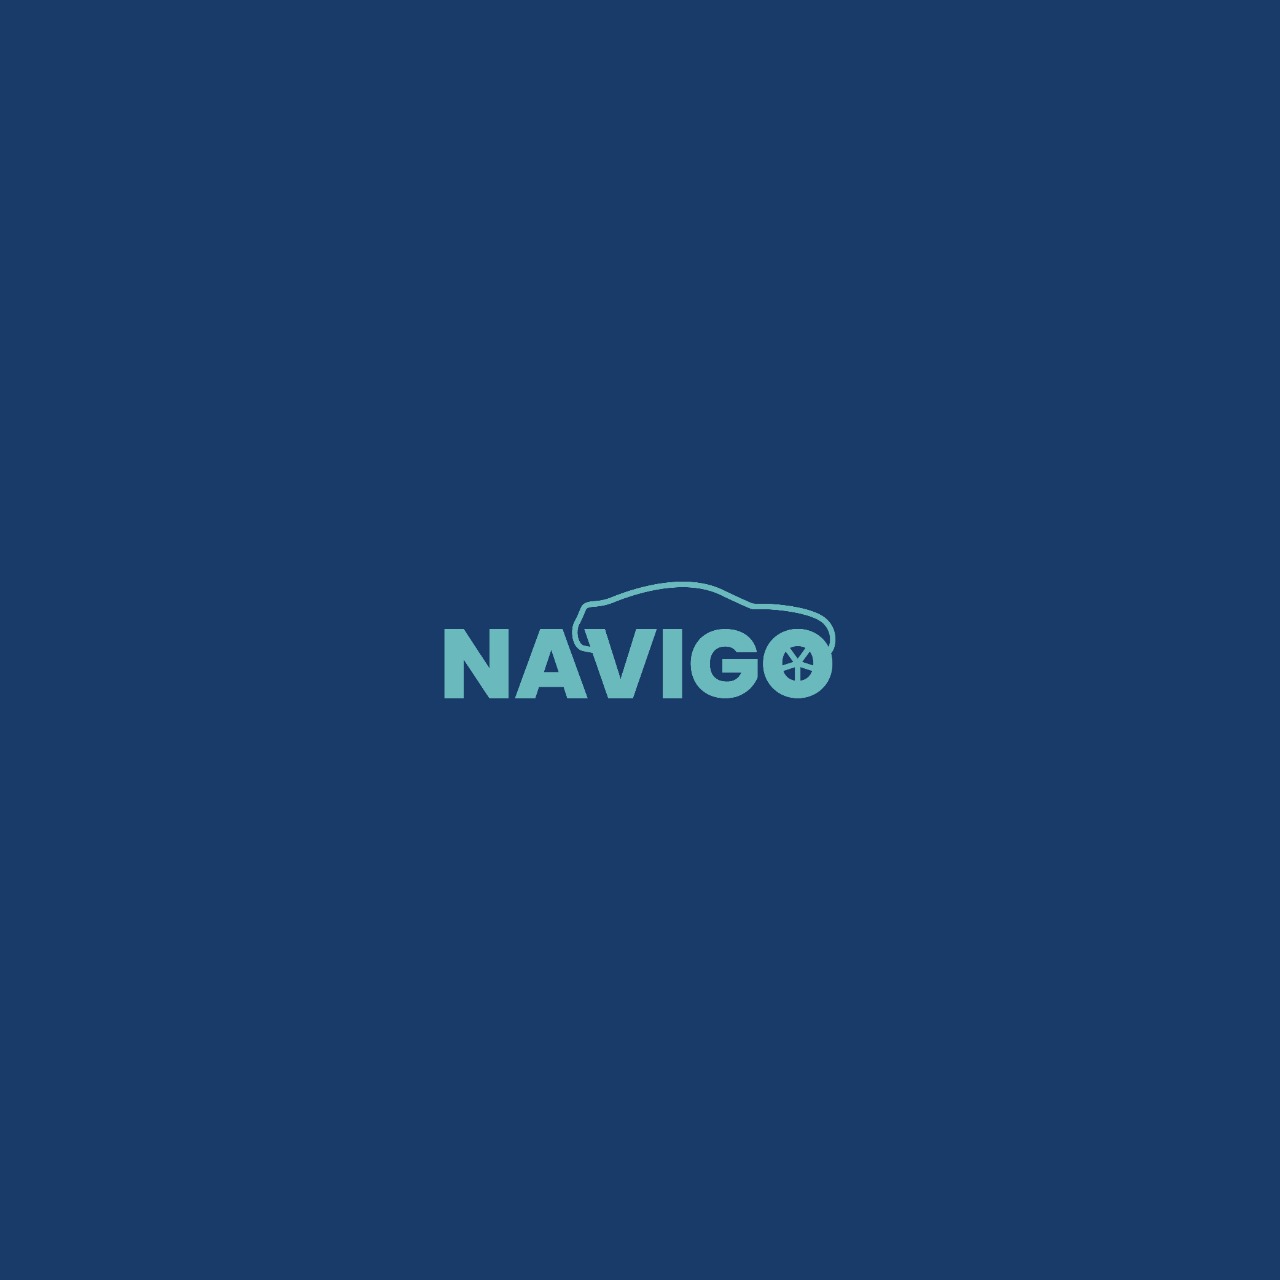 Navigo image